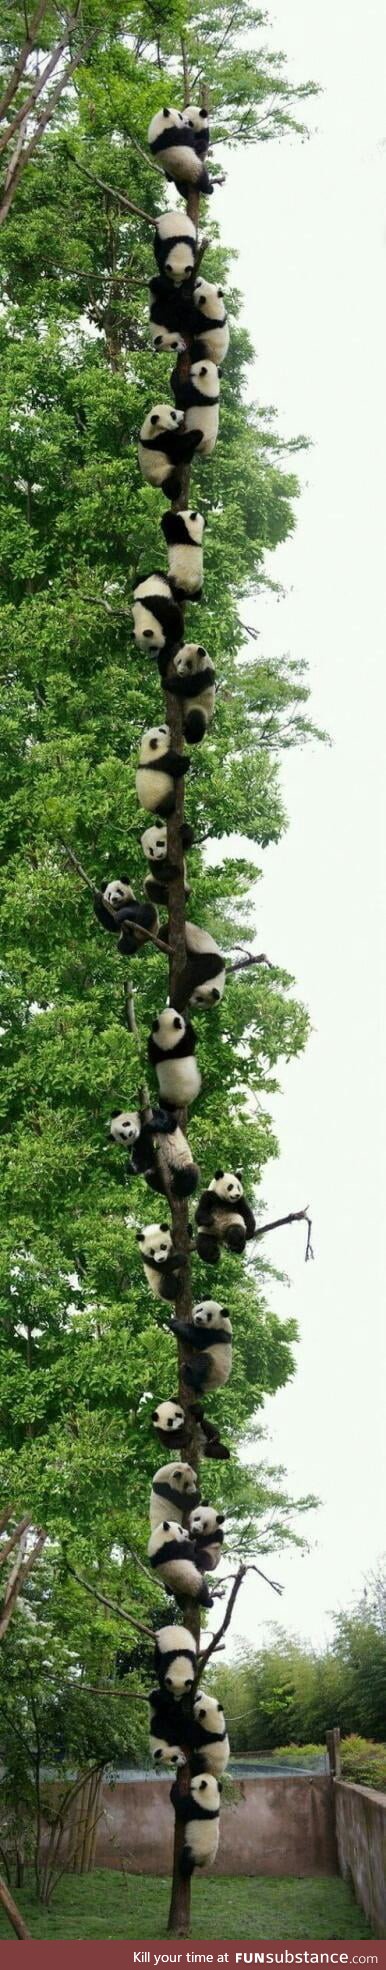 Panda tree